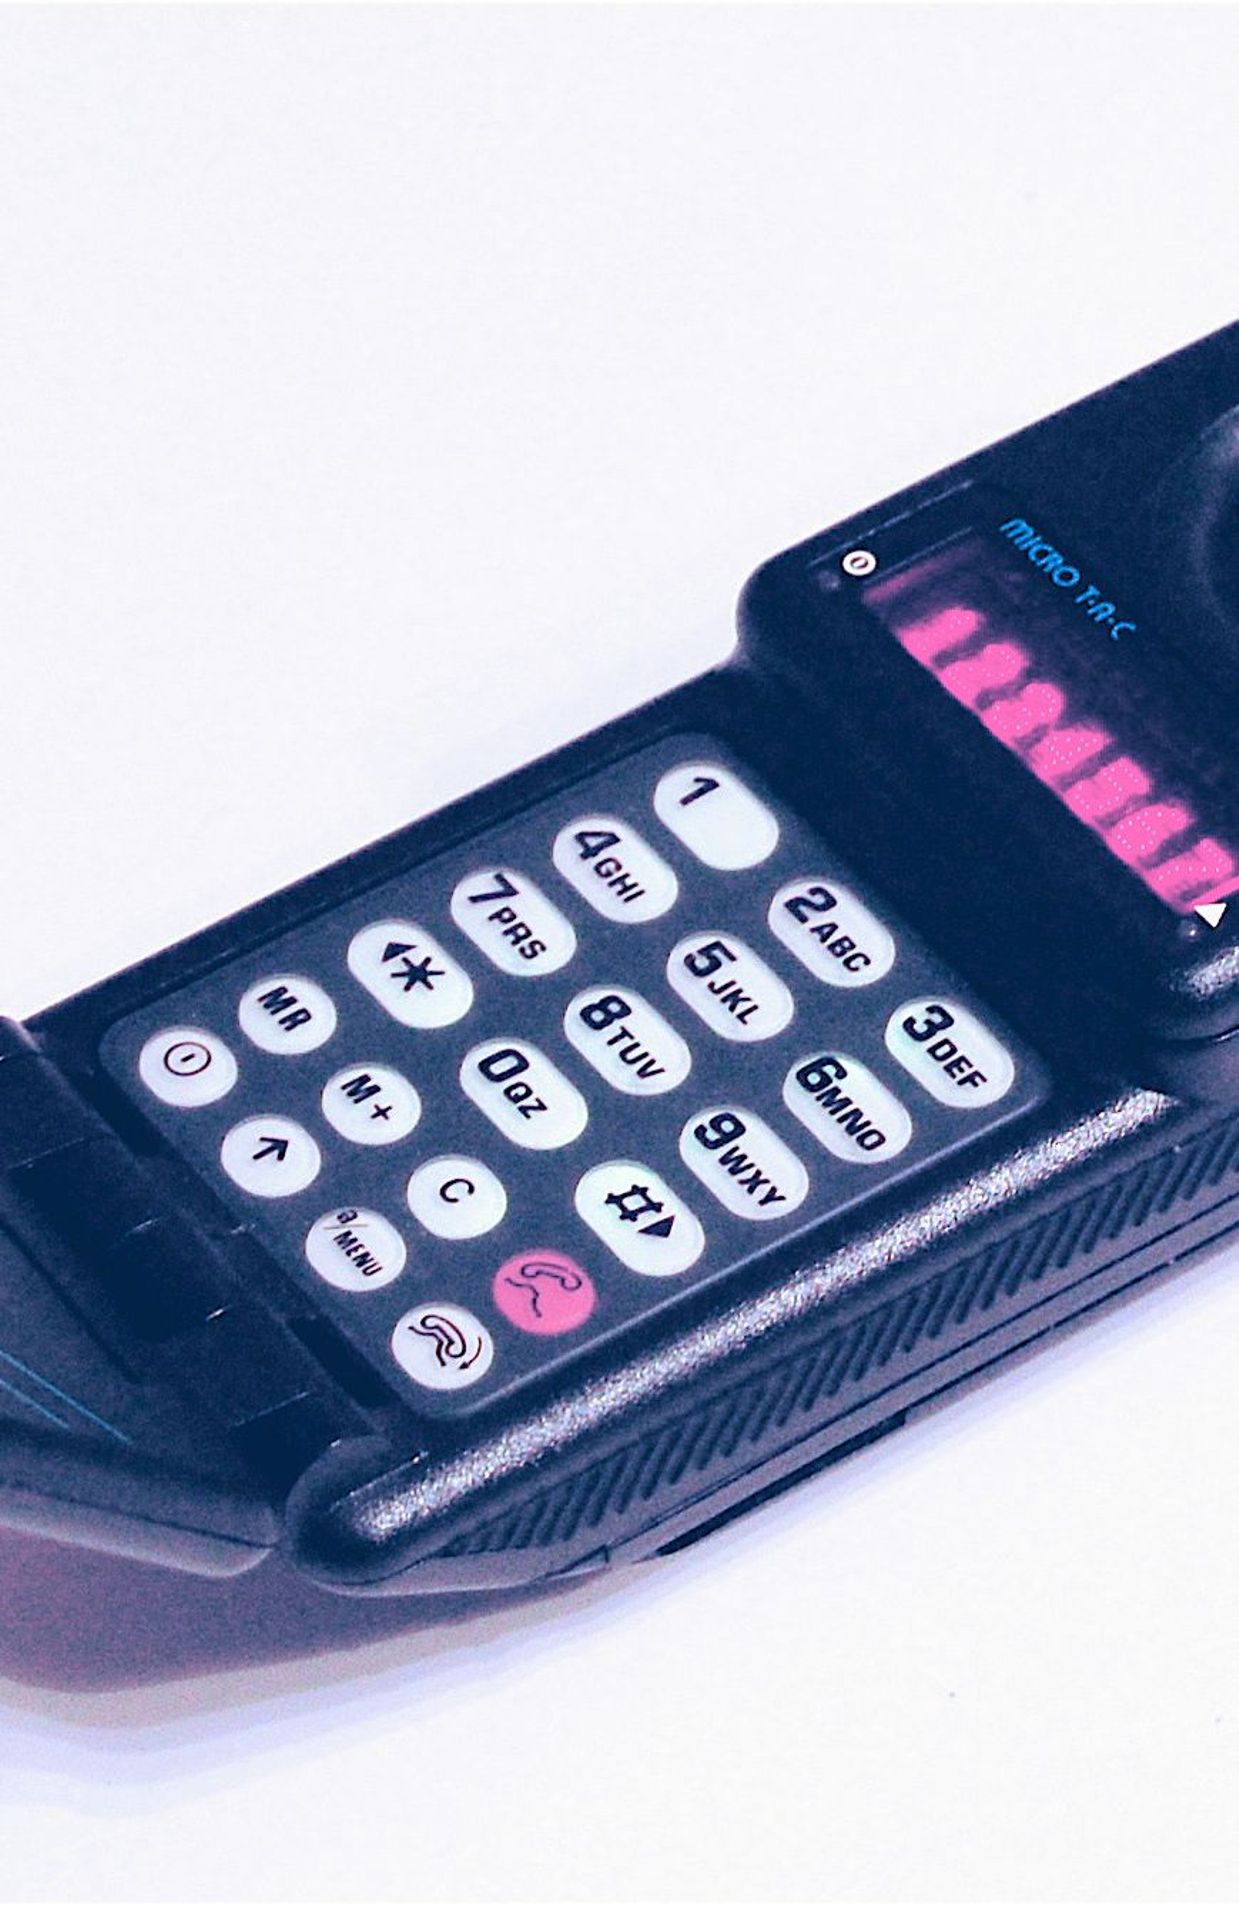 Le MicroTac est le premier GSM vraiment "portable"